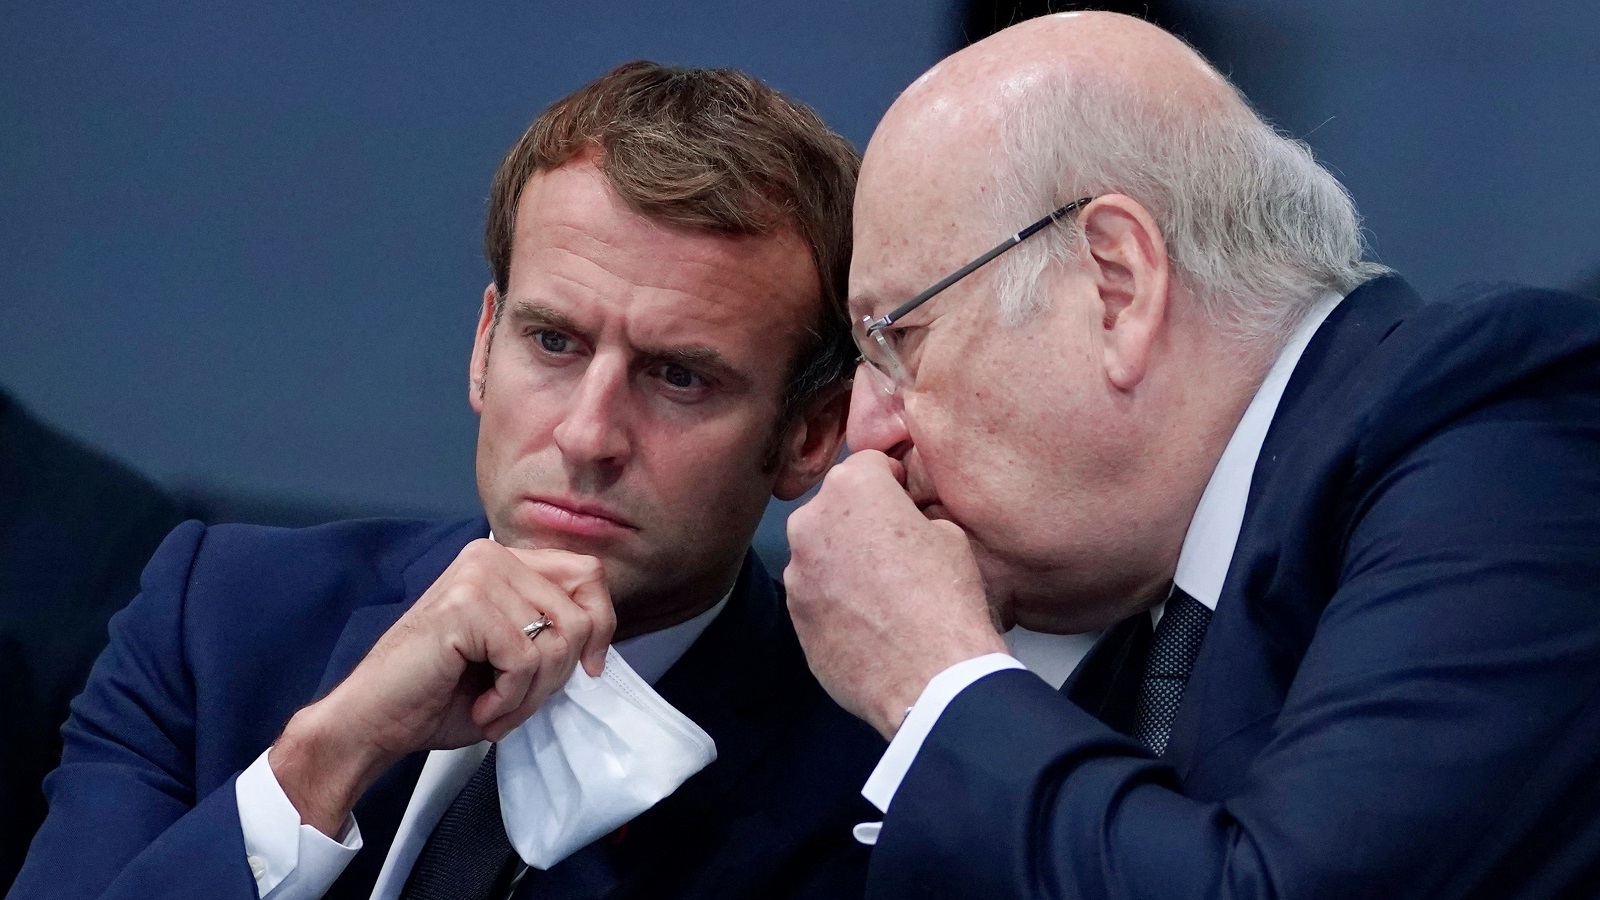 خفايا تمسّك فرنسا بمبدأ "المقايضة": التوازن أم الاستثمارات؟